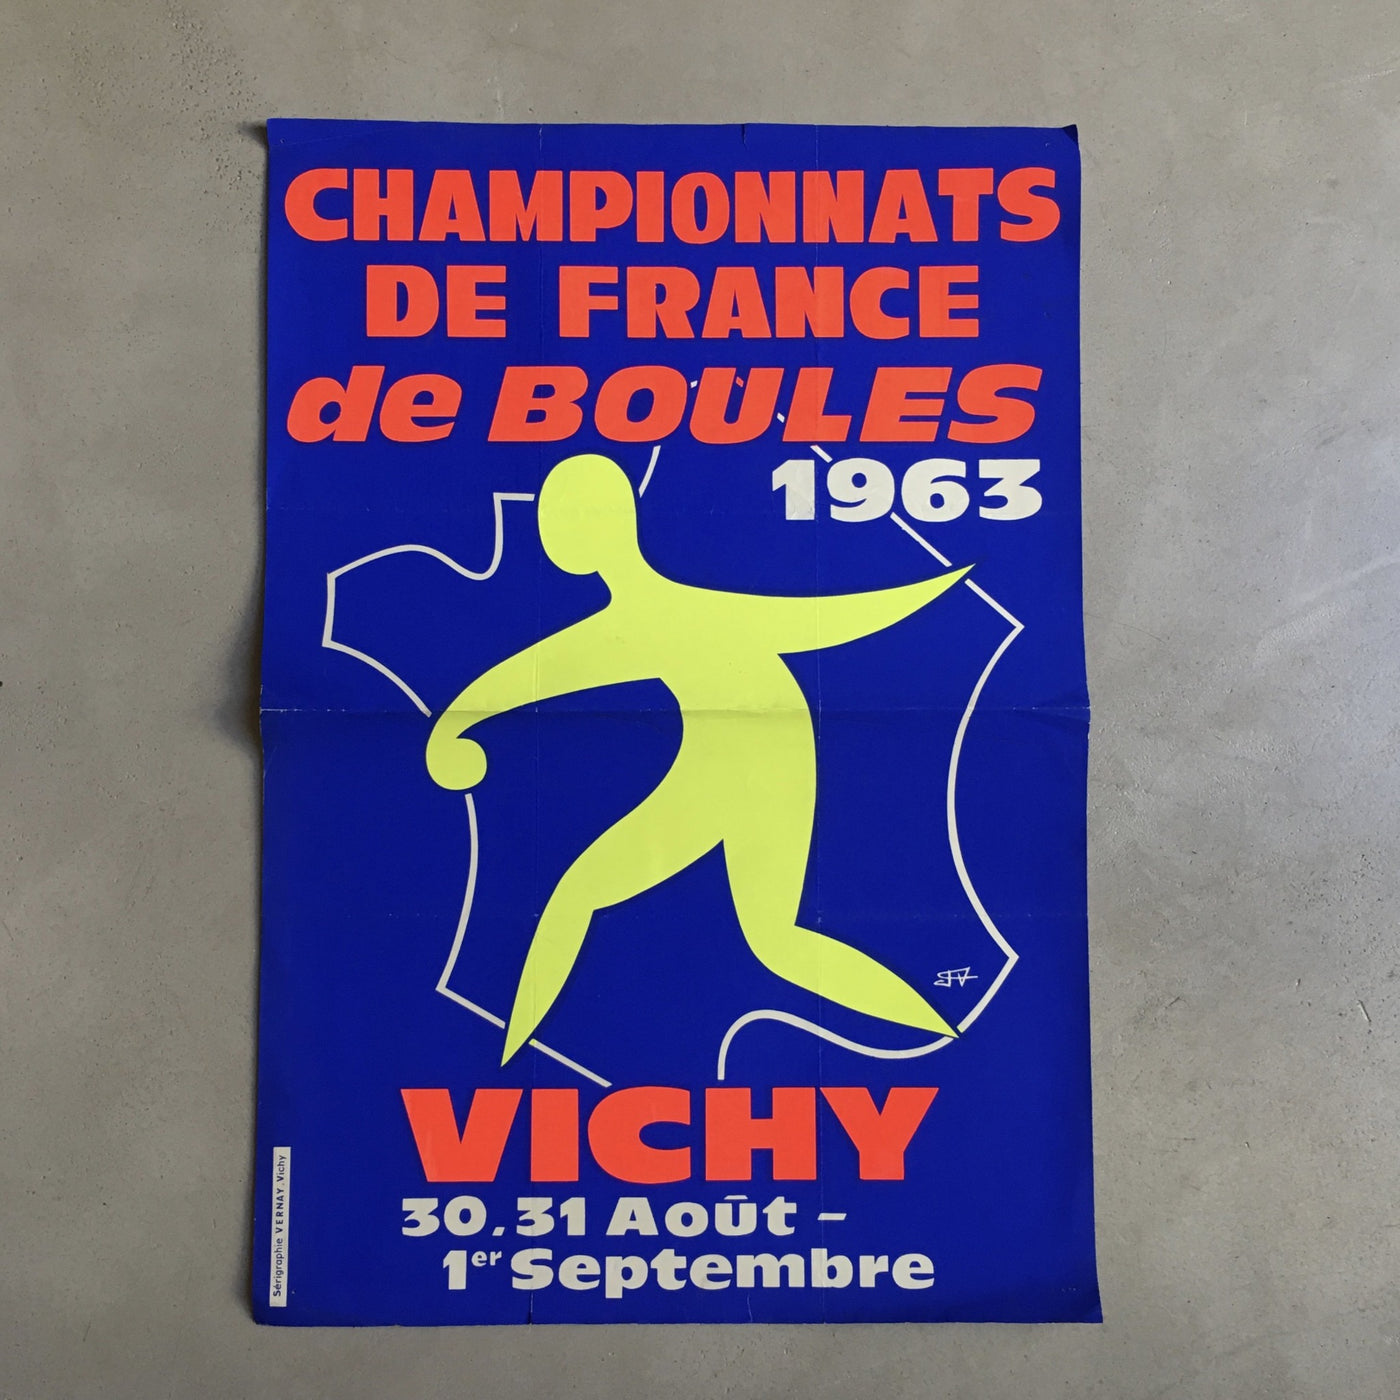 Sérigraphie originale Championnats de France de Boules 1963 Vichy signée F. V.